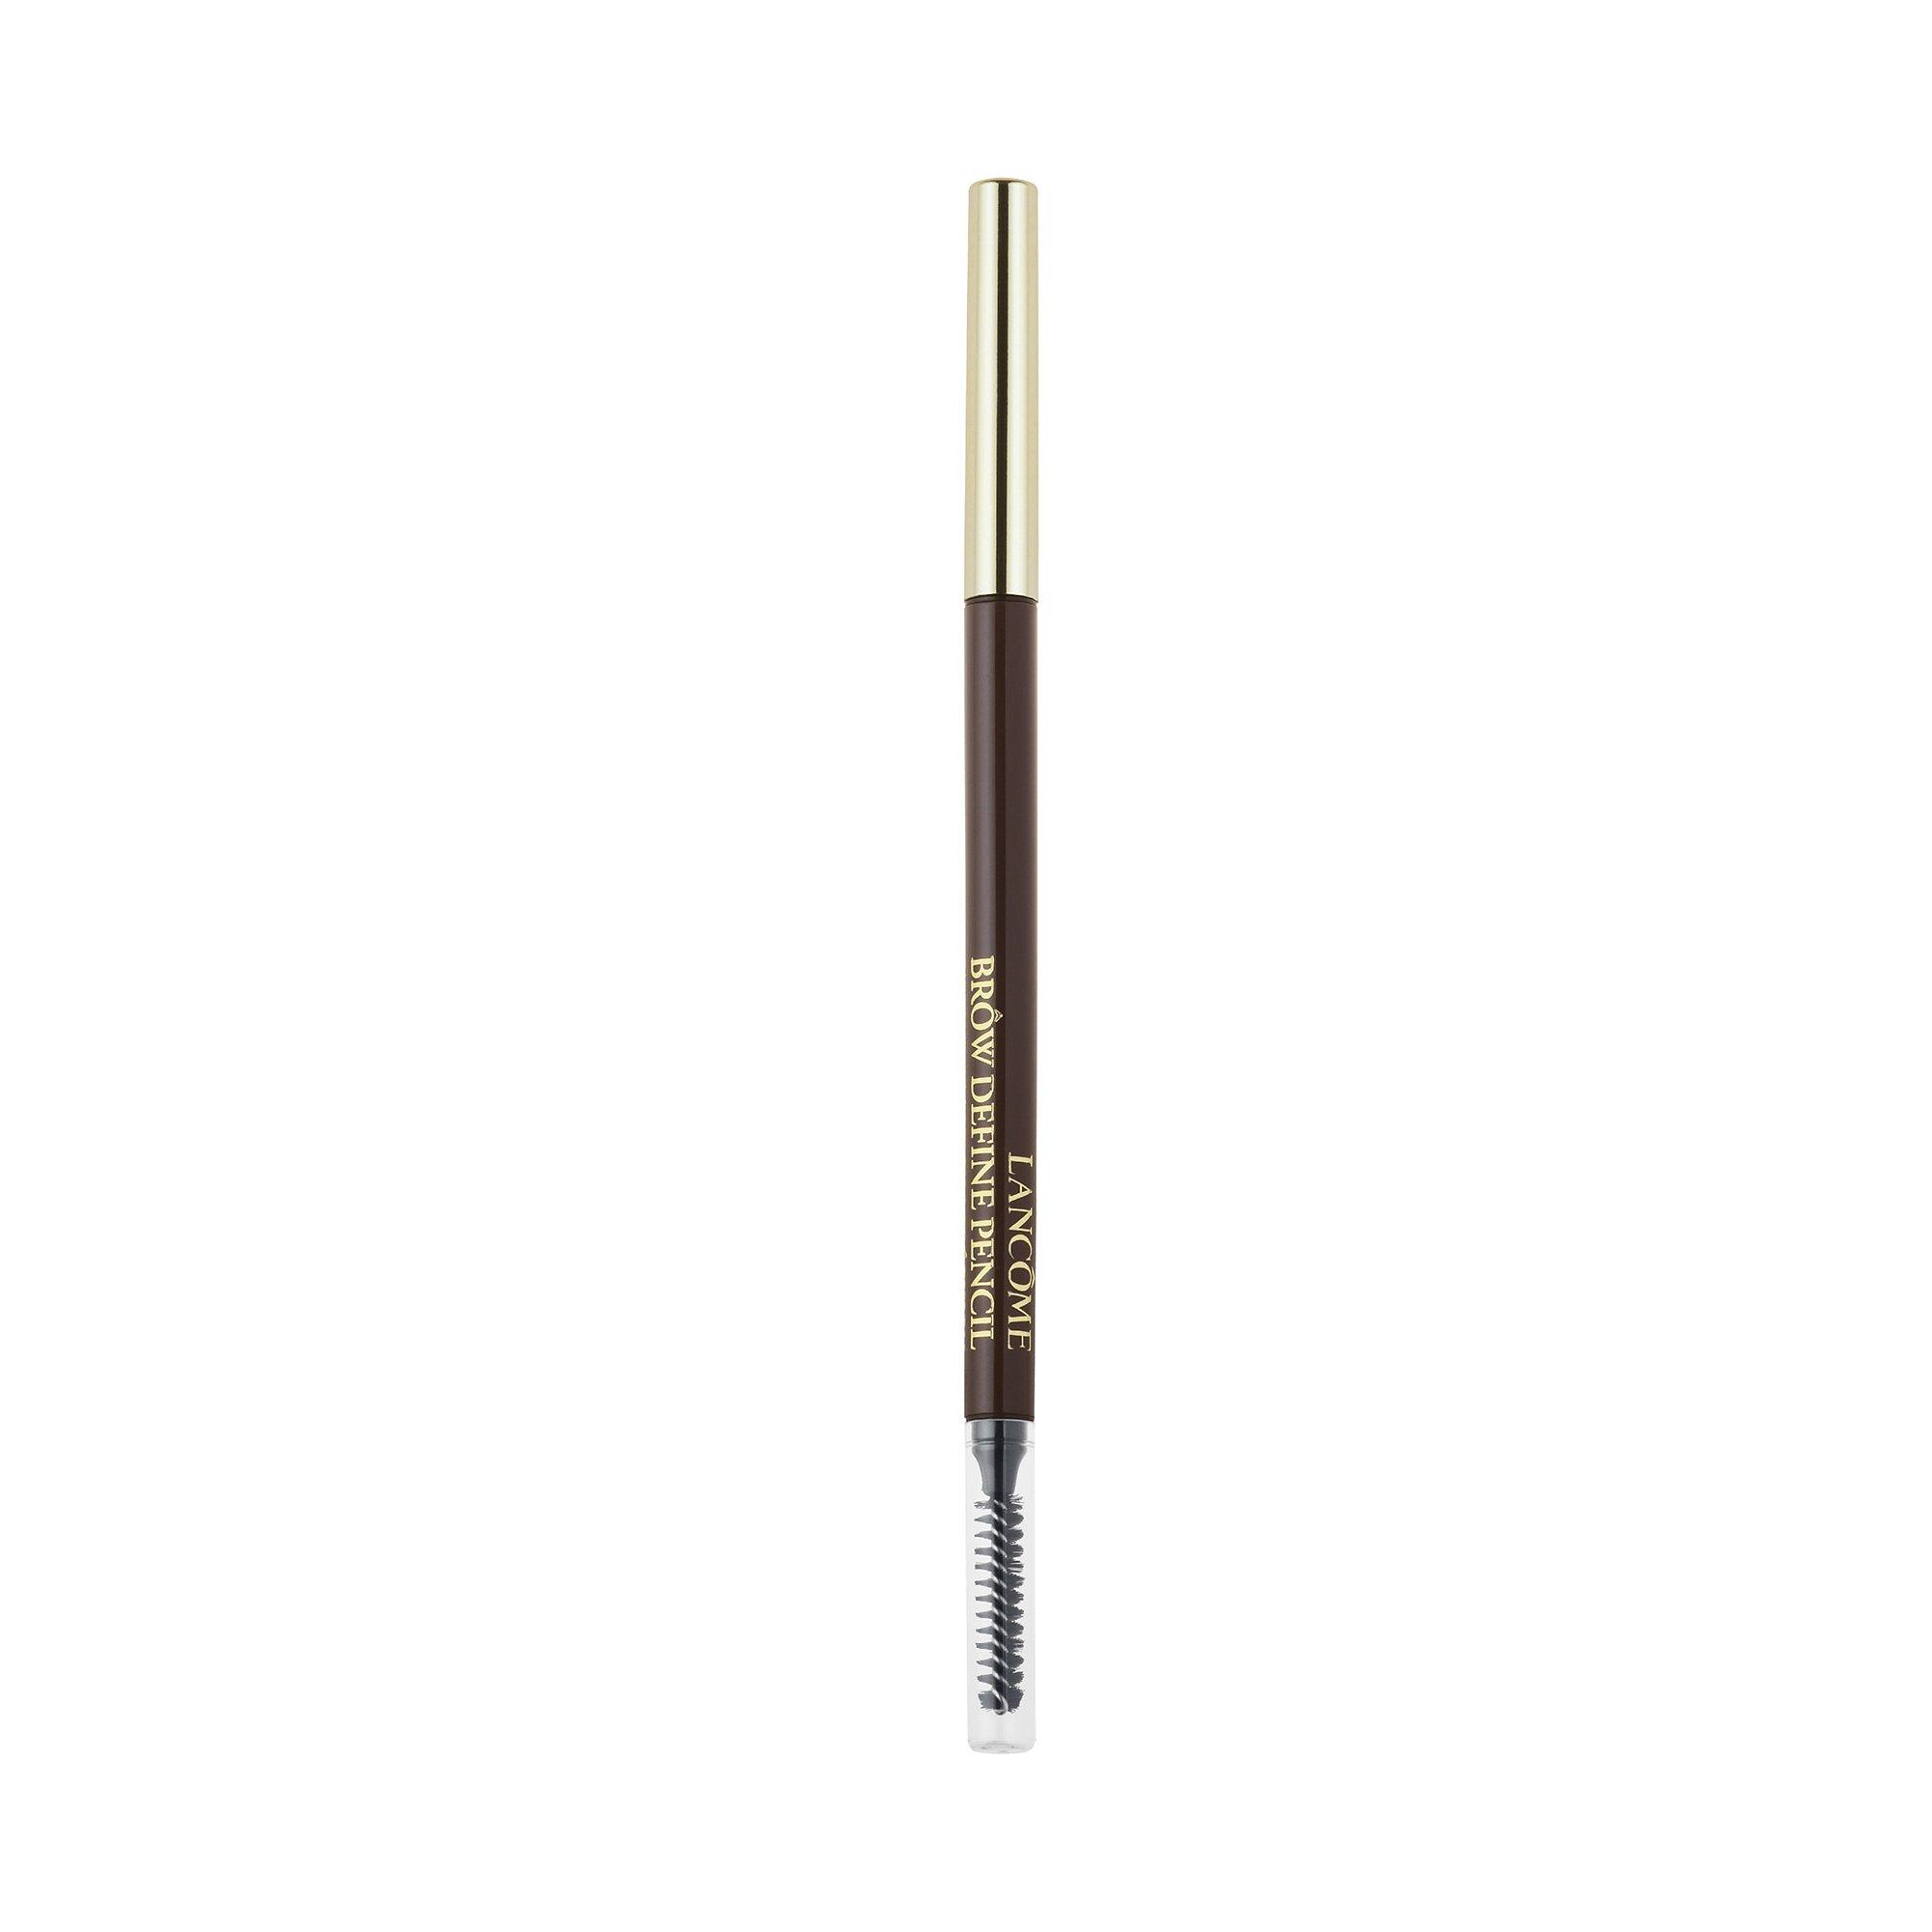 Image of Lancôme Brow Define Brow Define Pencil